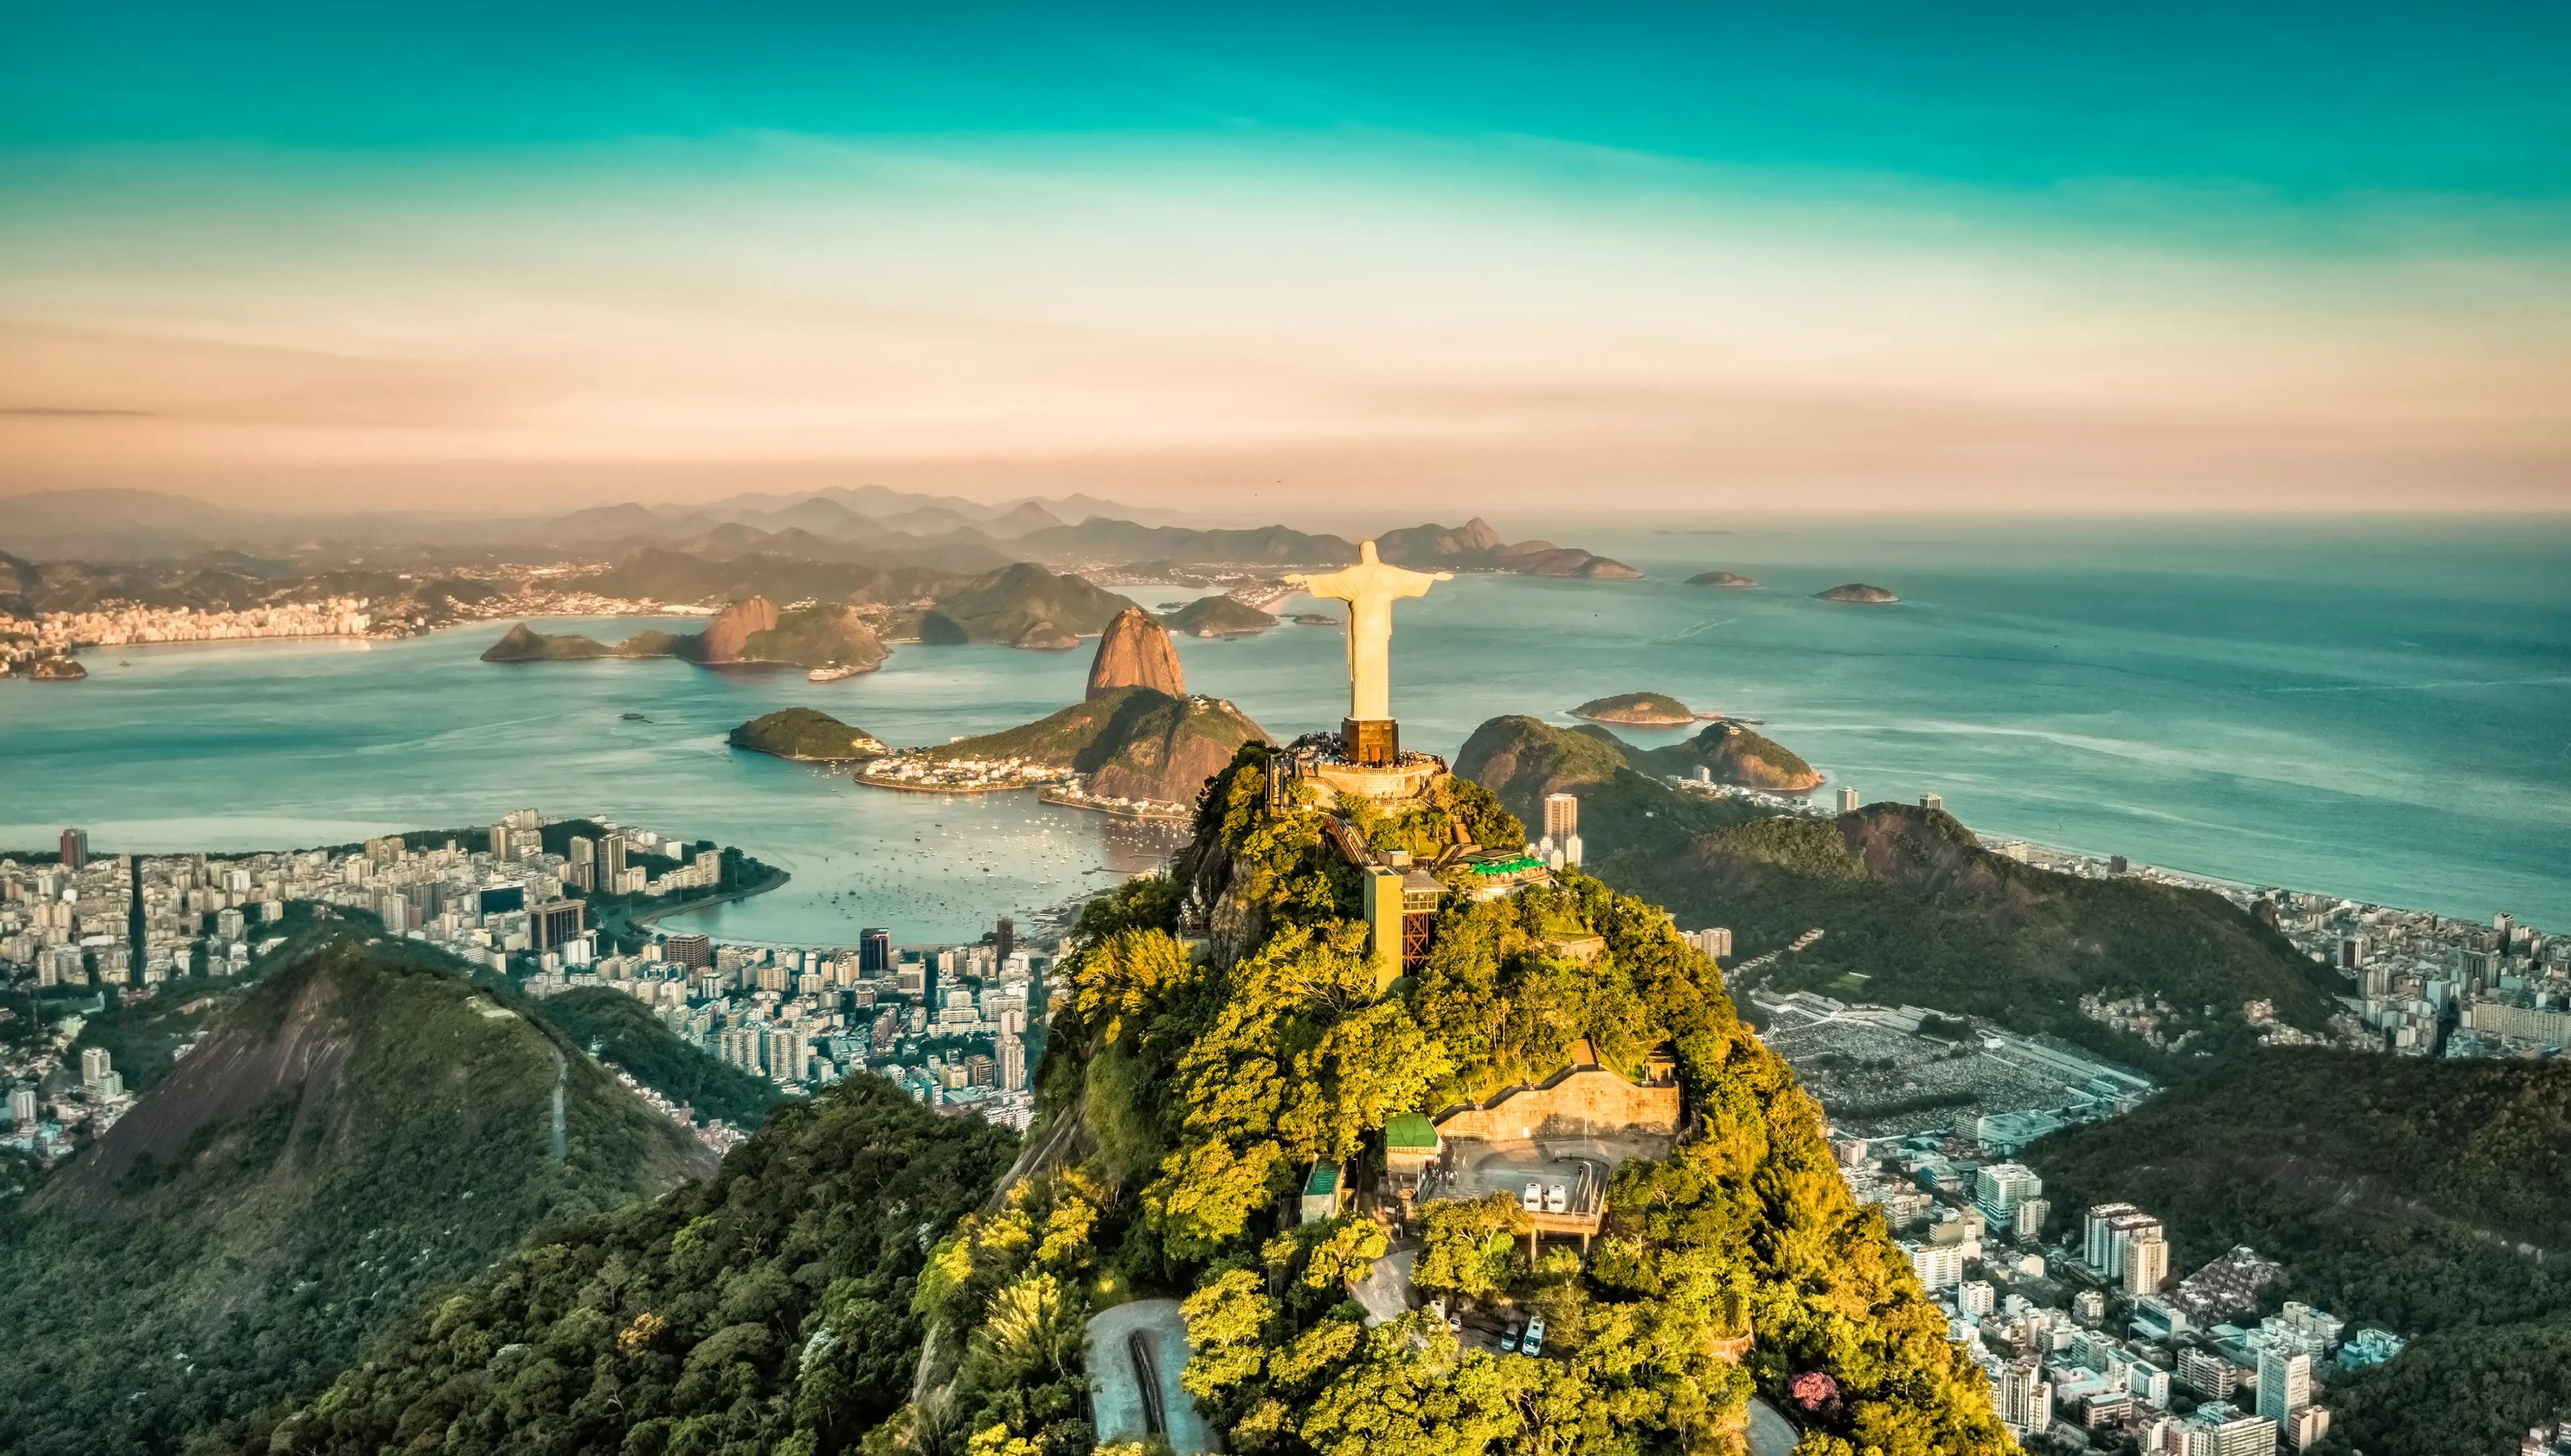 Explore Rio de Janeiro, Brazil in One Magical Day